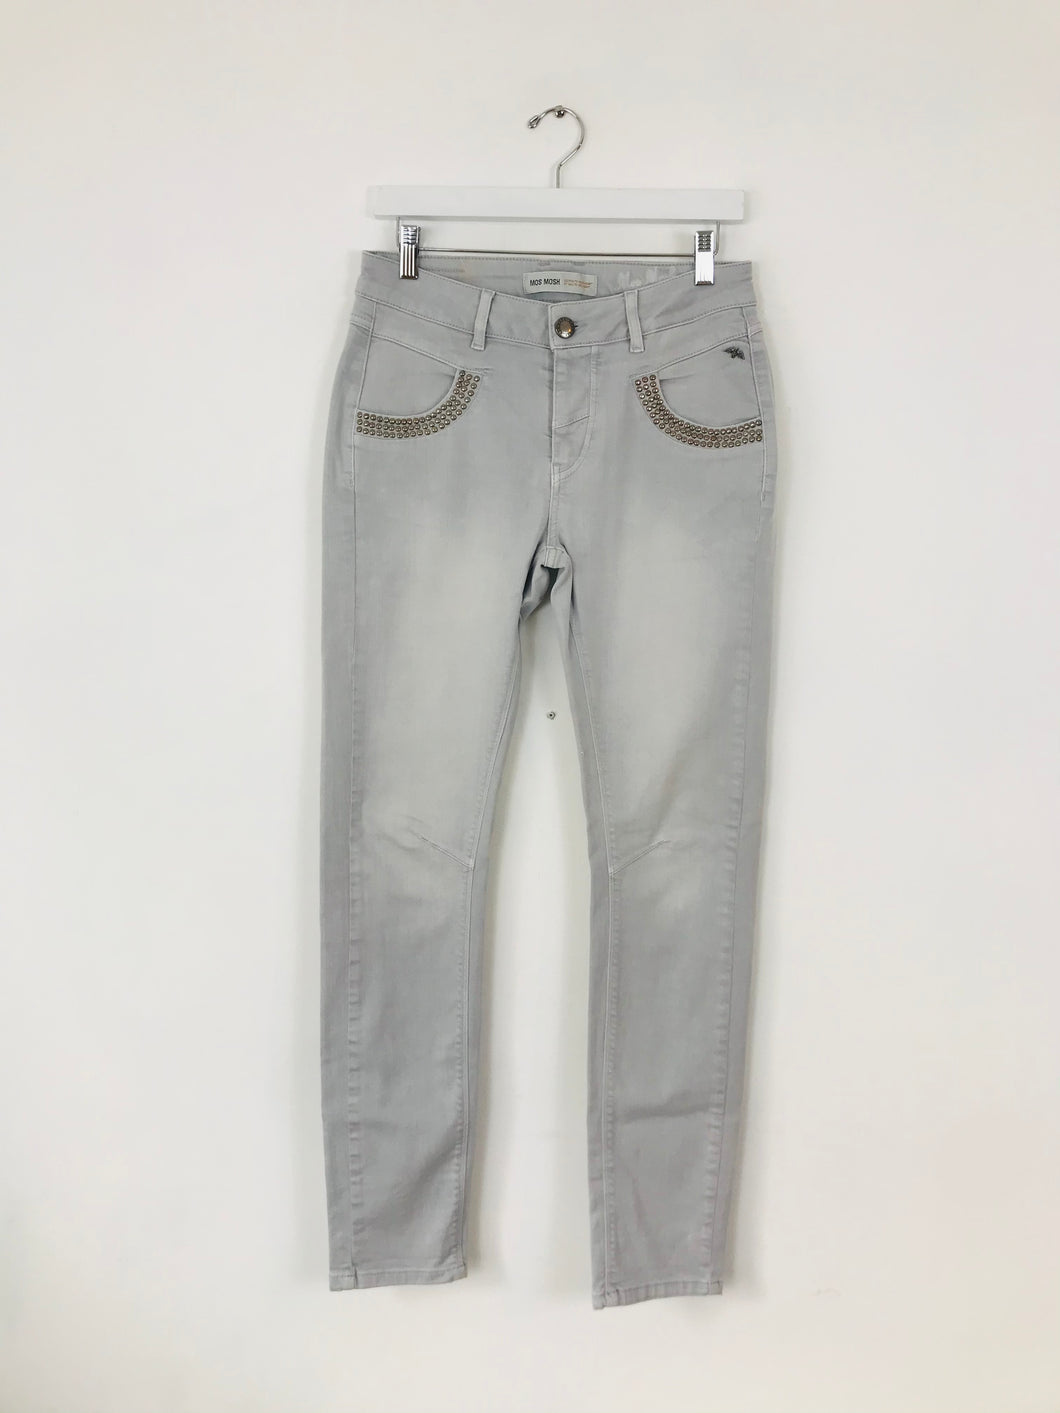 Mos Mosh Women’s Skinny Jeans | UK10-12 W29 L31 | Grey